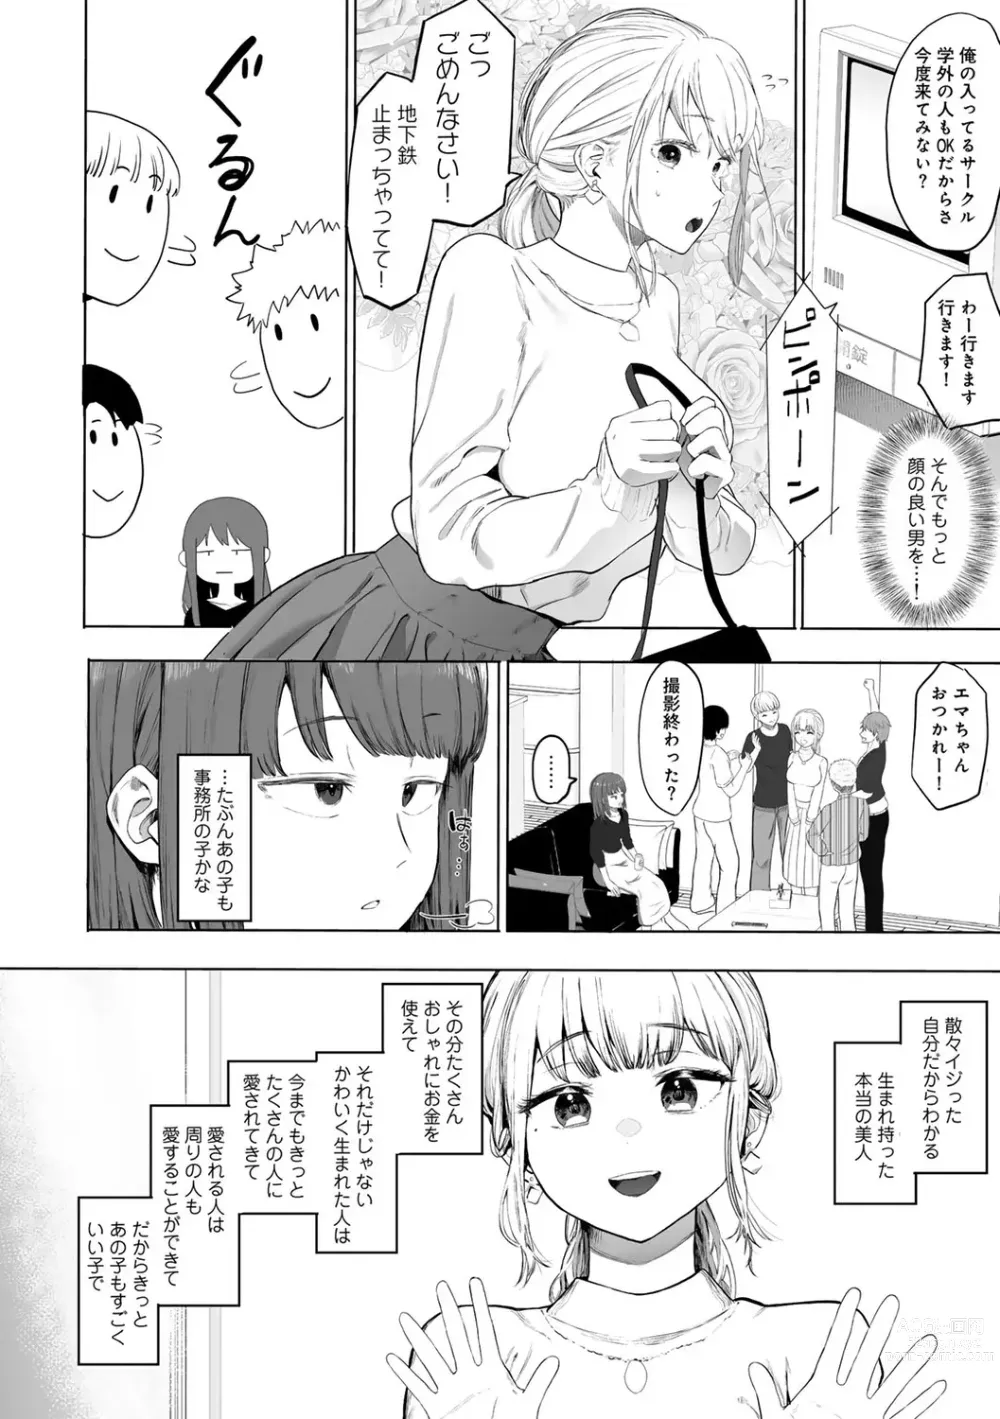 Page 6 of manga COMIC kisshug vol.3